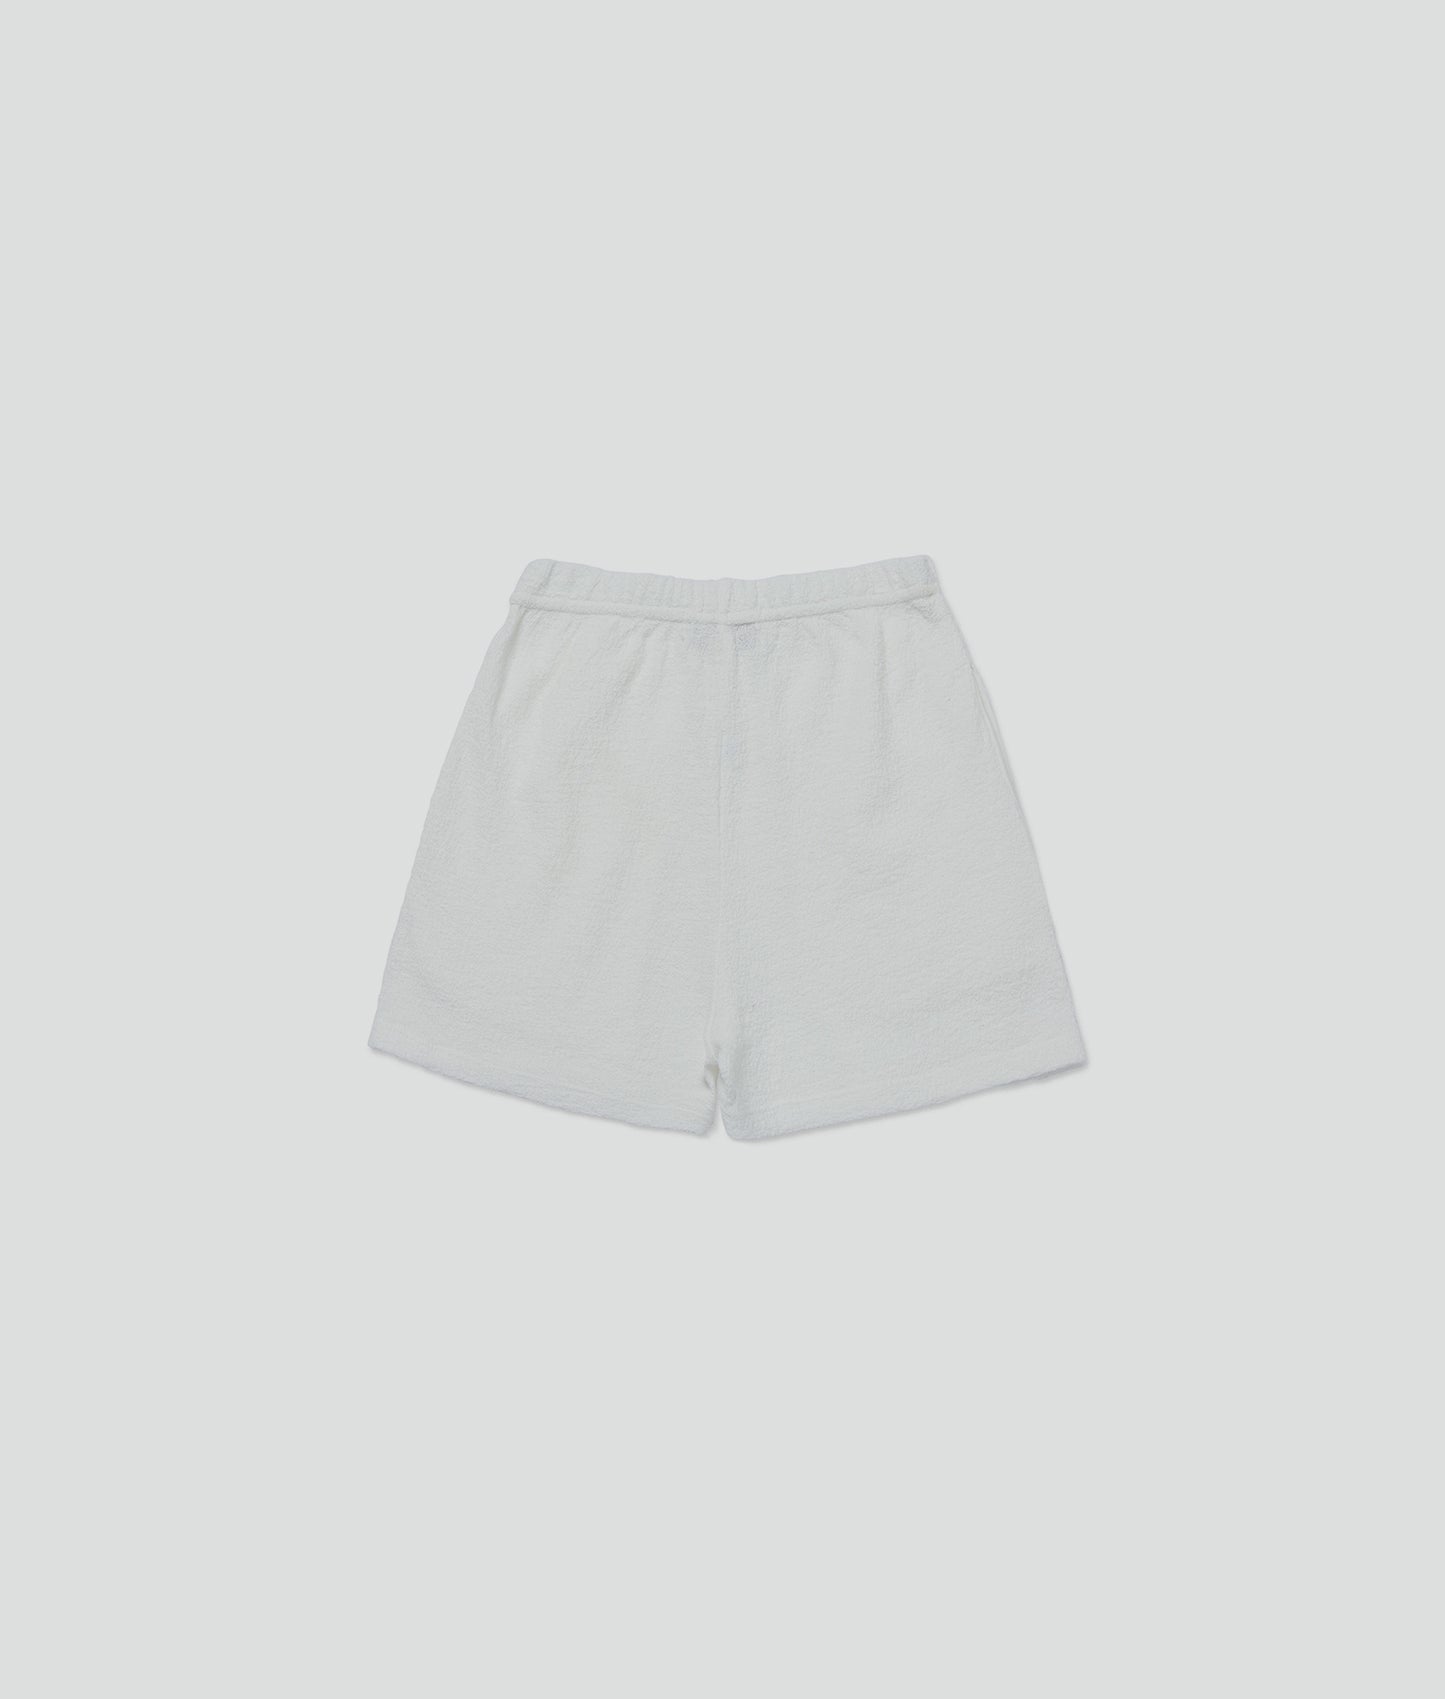 White Basic Shorts